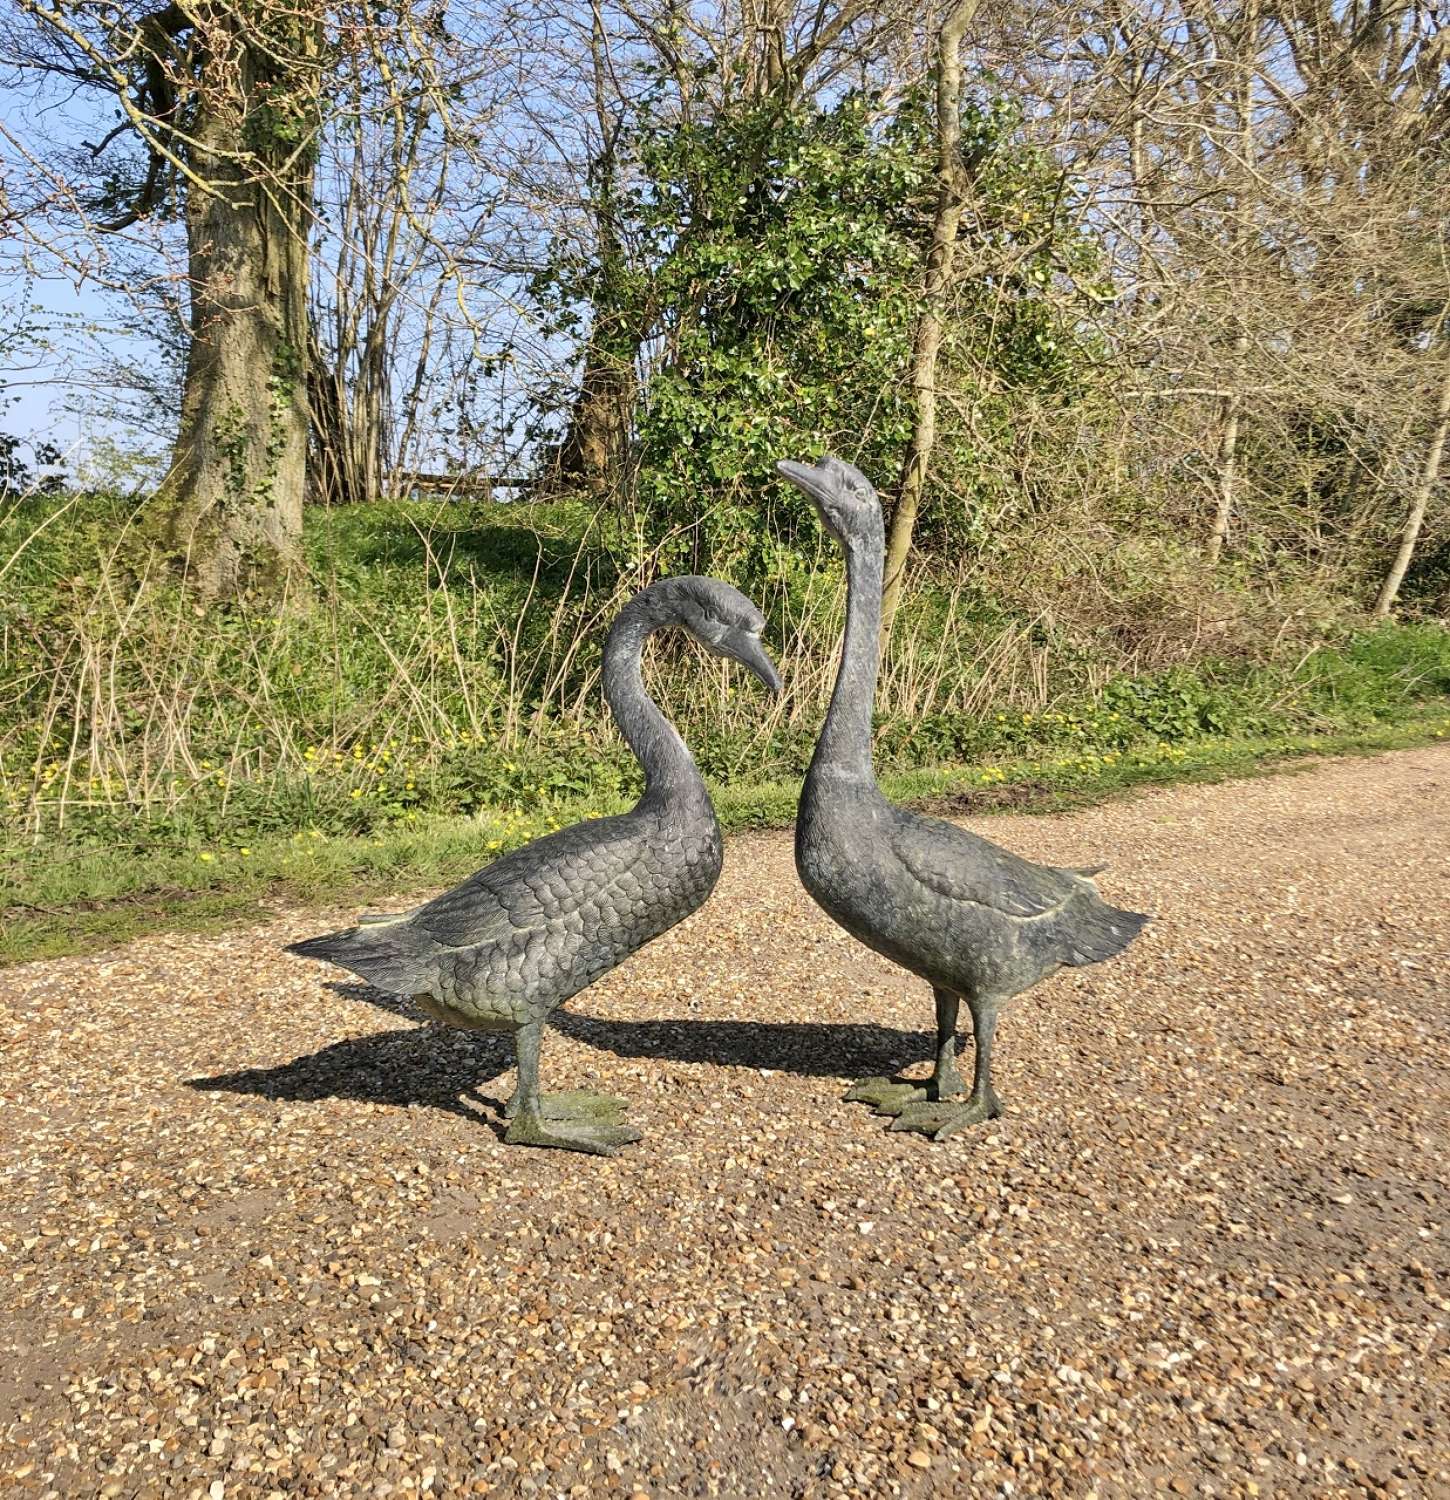 Pair of Geese